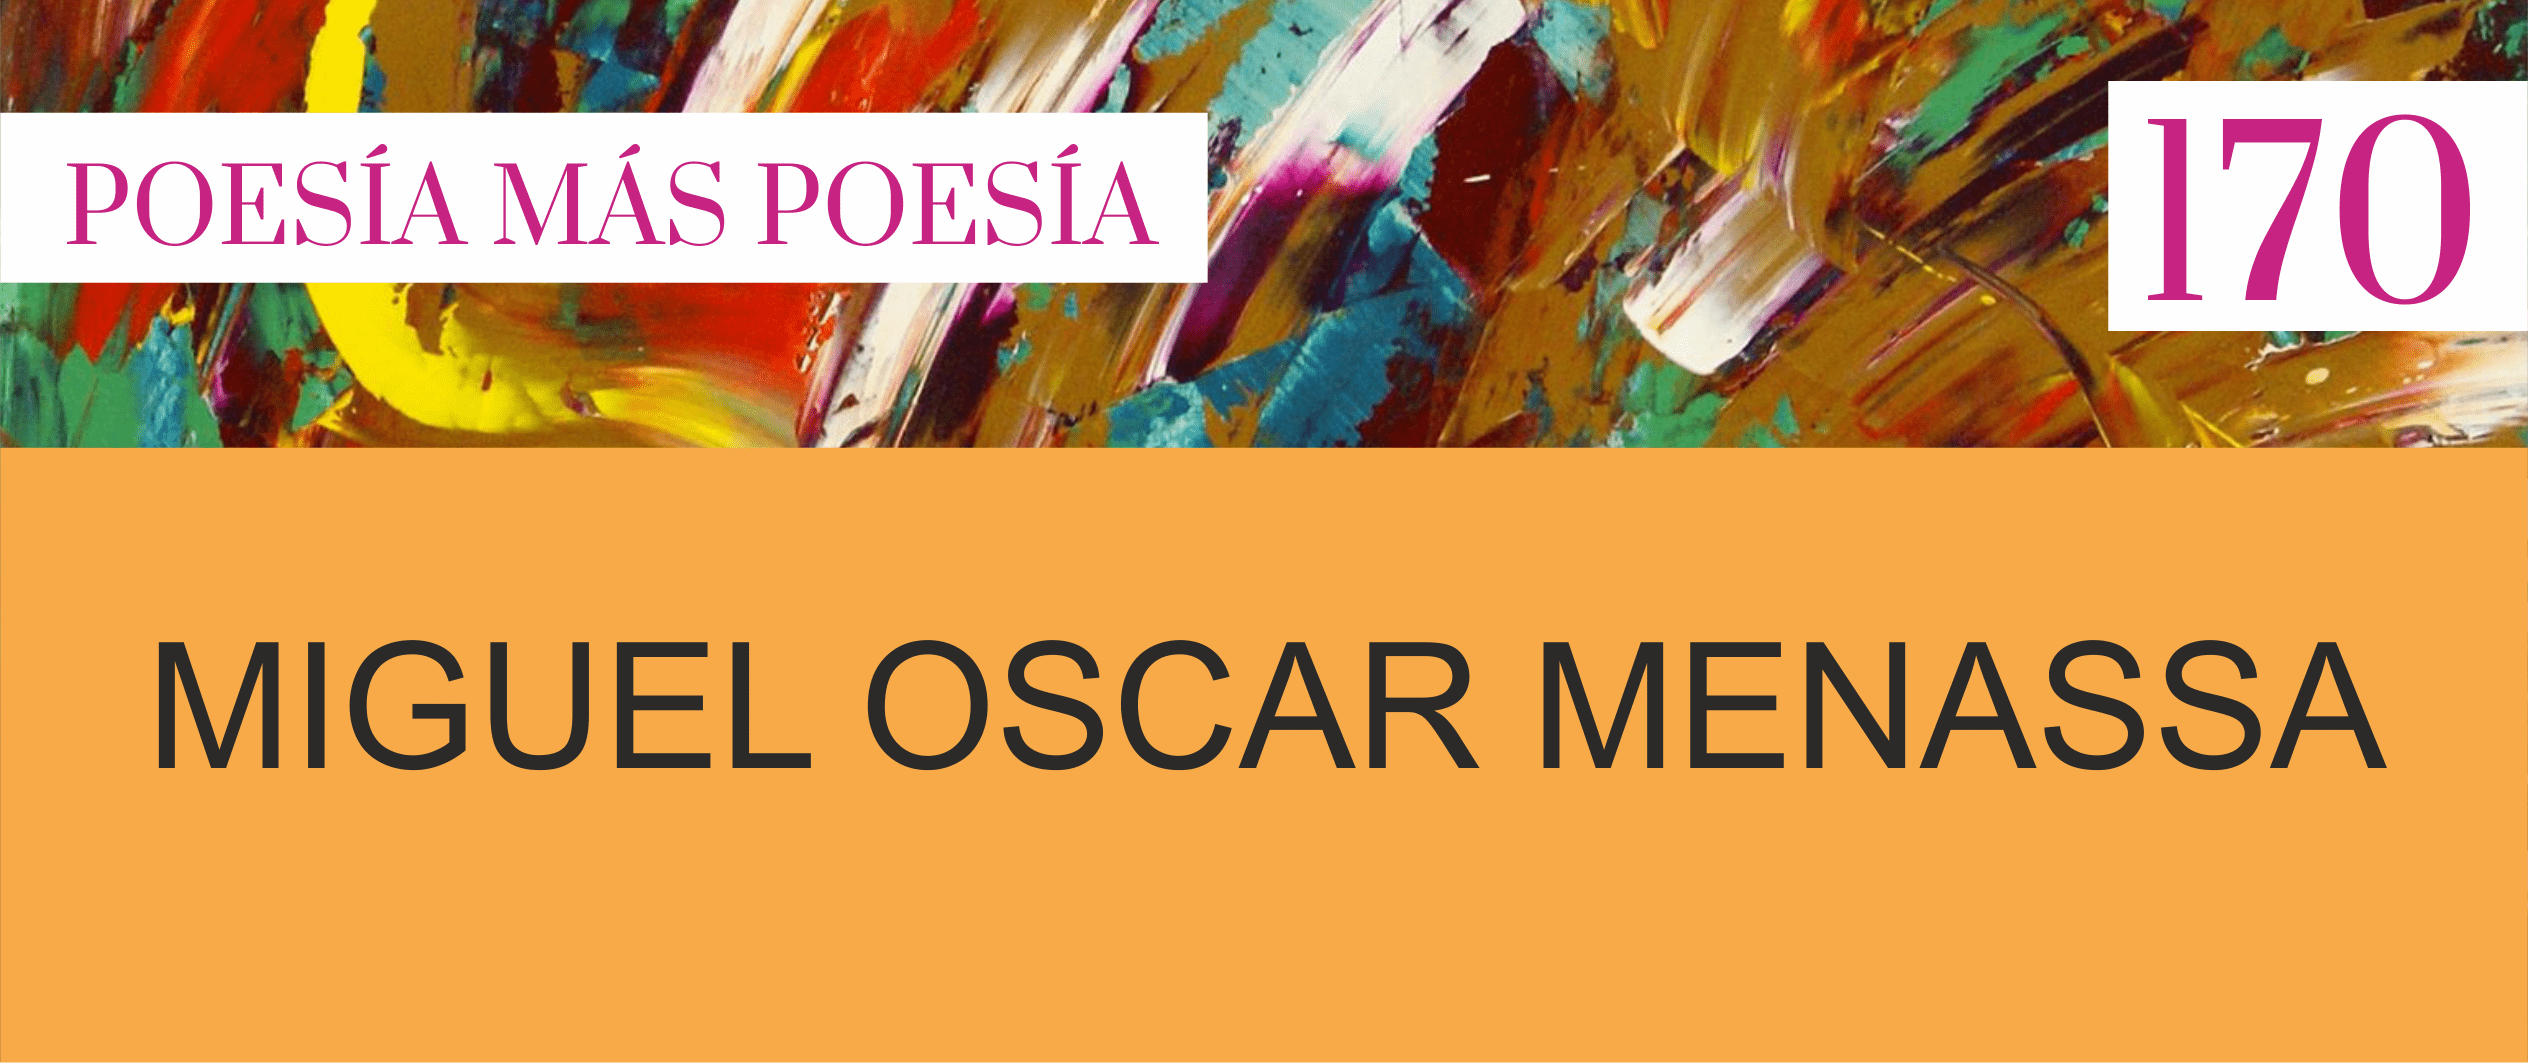 170 Poesía más Poesía: Miguel Oscar Menassa y la mujer en la escritura